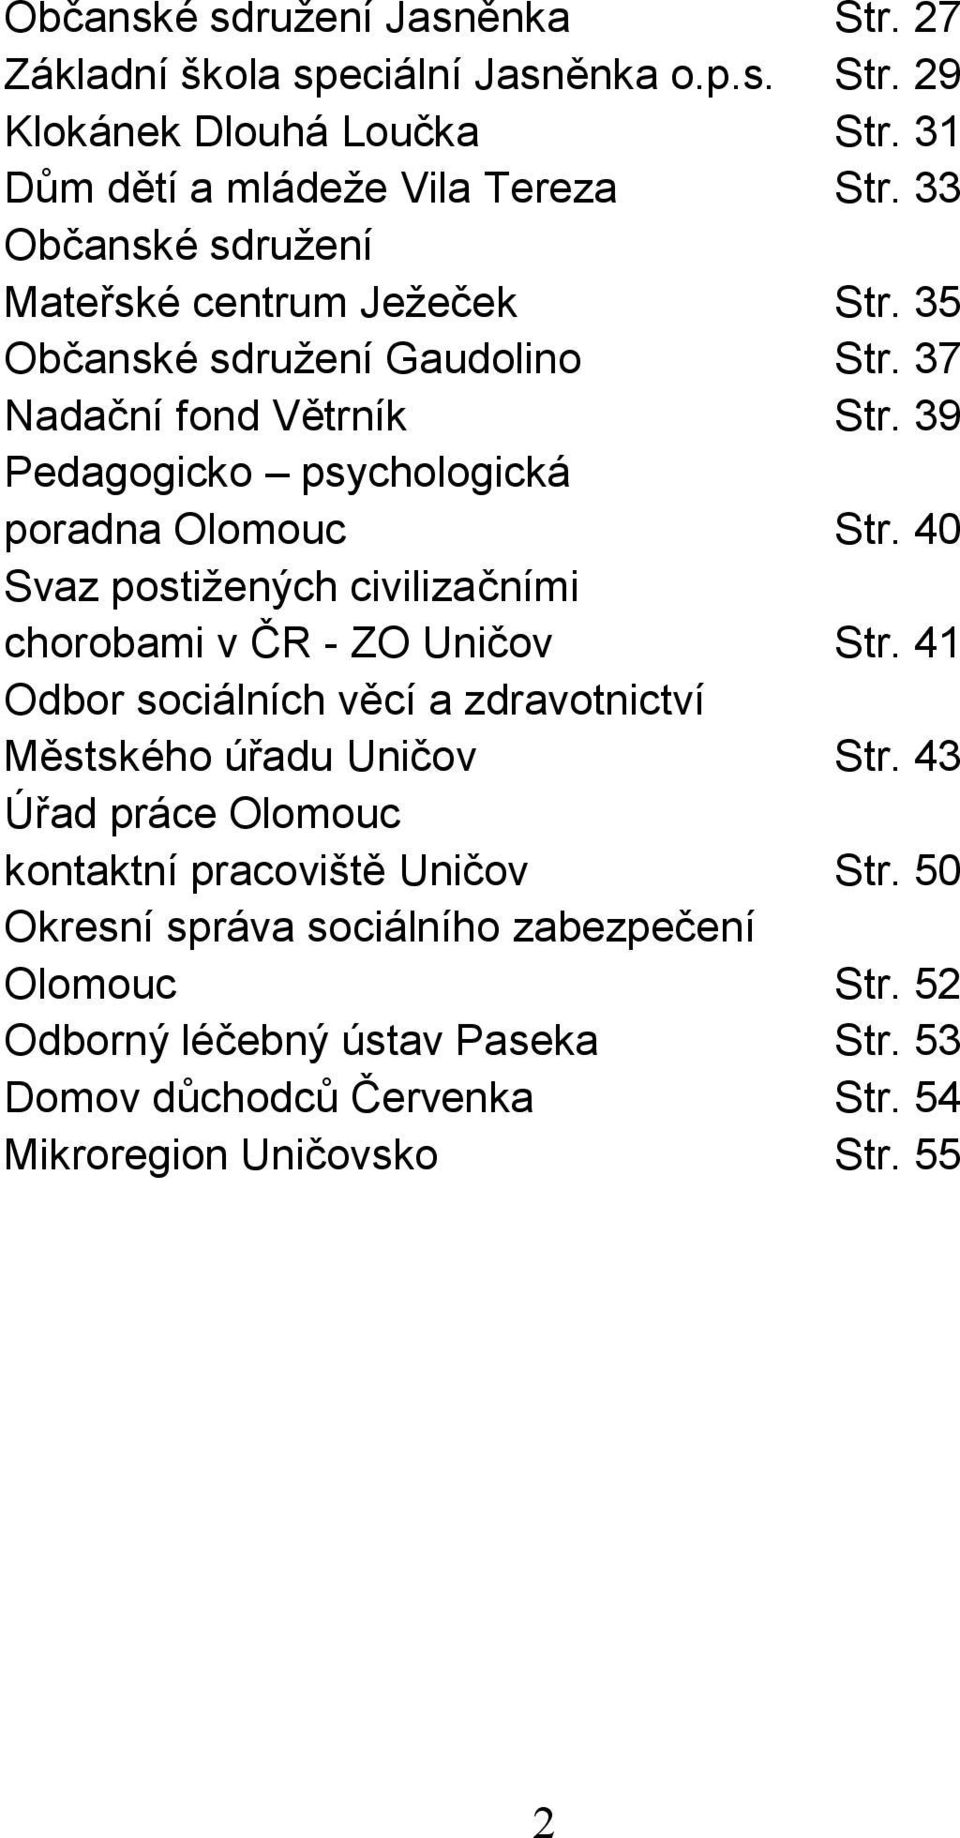 40 Svaz postižených civilizačními chorobami v ČR - ZO Uničov Str. 41 Odbor sociálních věcí a zdravotnictví Městského úřadu Uničov Str.